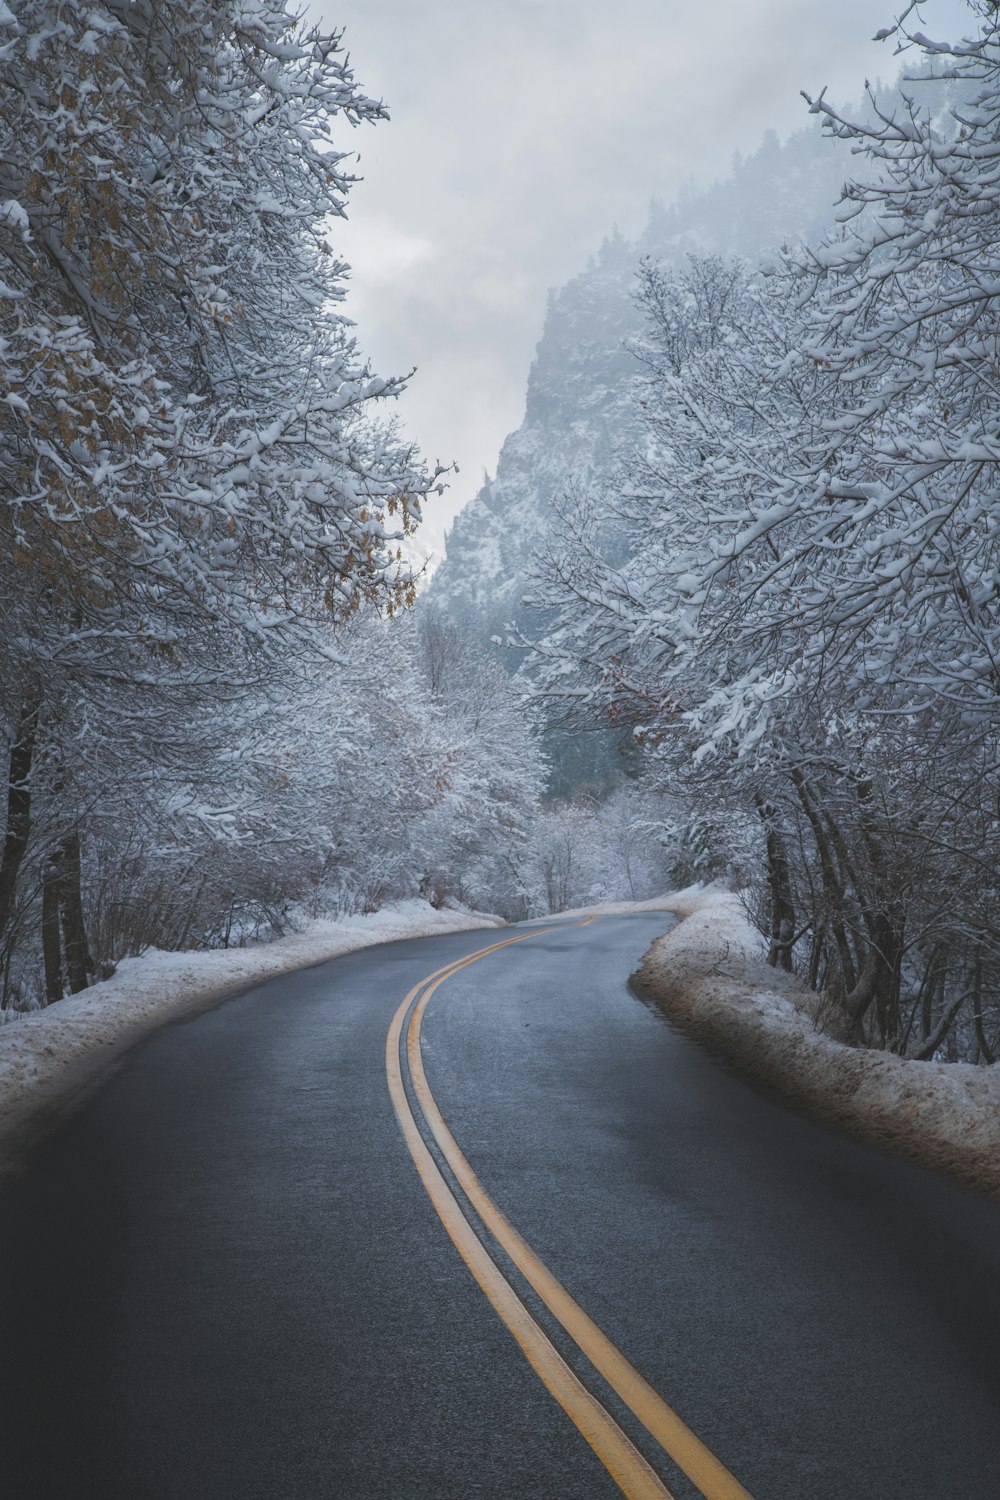 route goudronnée noire entre des arbres recouverts de neige pendant la journée